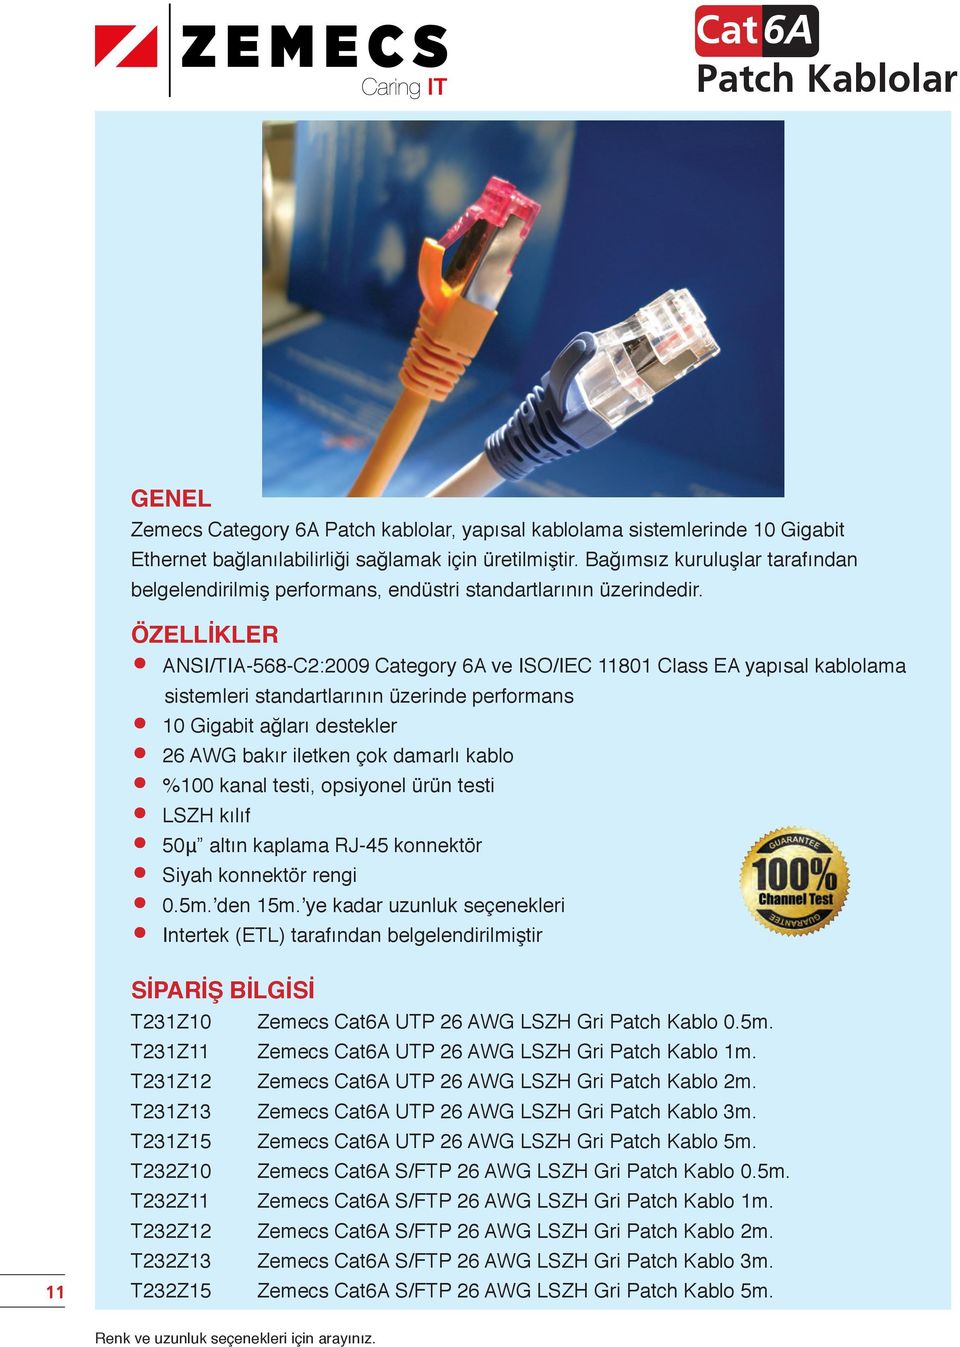 11 ANSI/TIA-568-C2:2009 Category 6A ve ISO/IEC 11801 Class EA yapısal kablolama sistemleri standartlarının üzerinde performans 10 Gigabit ağları destekler 26 AWG bakır iletken çok damarlı kablo %100